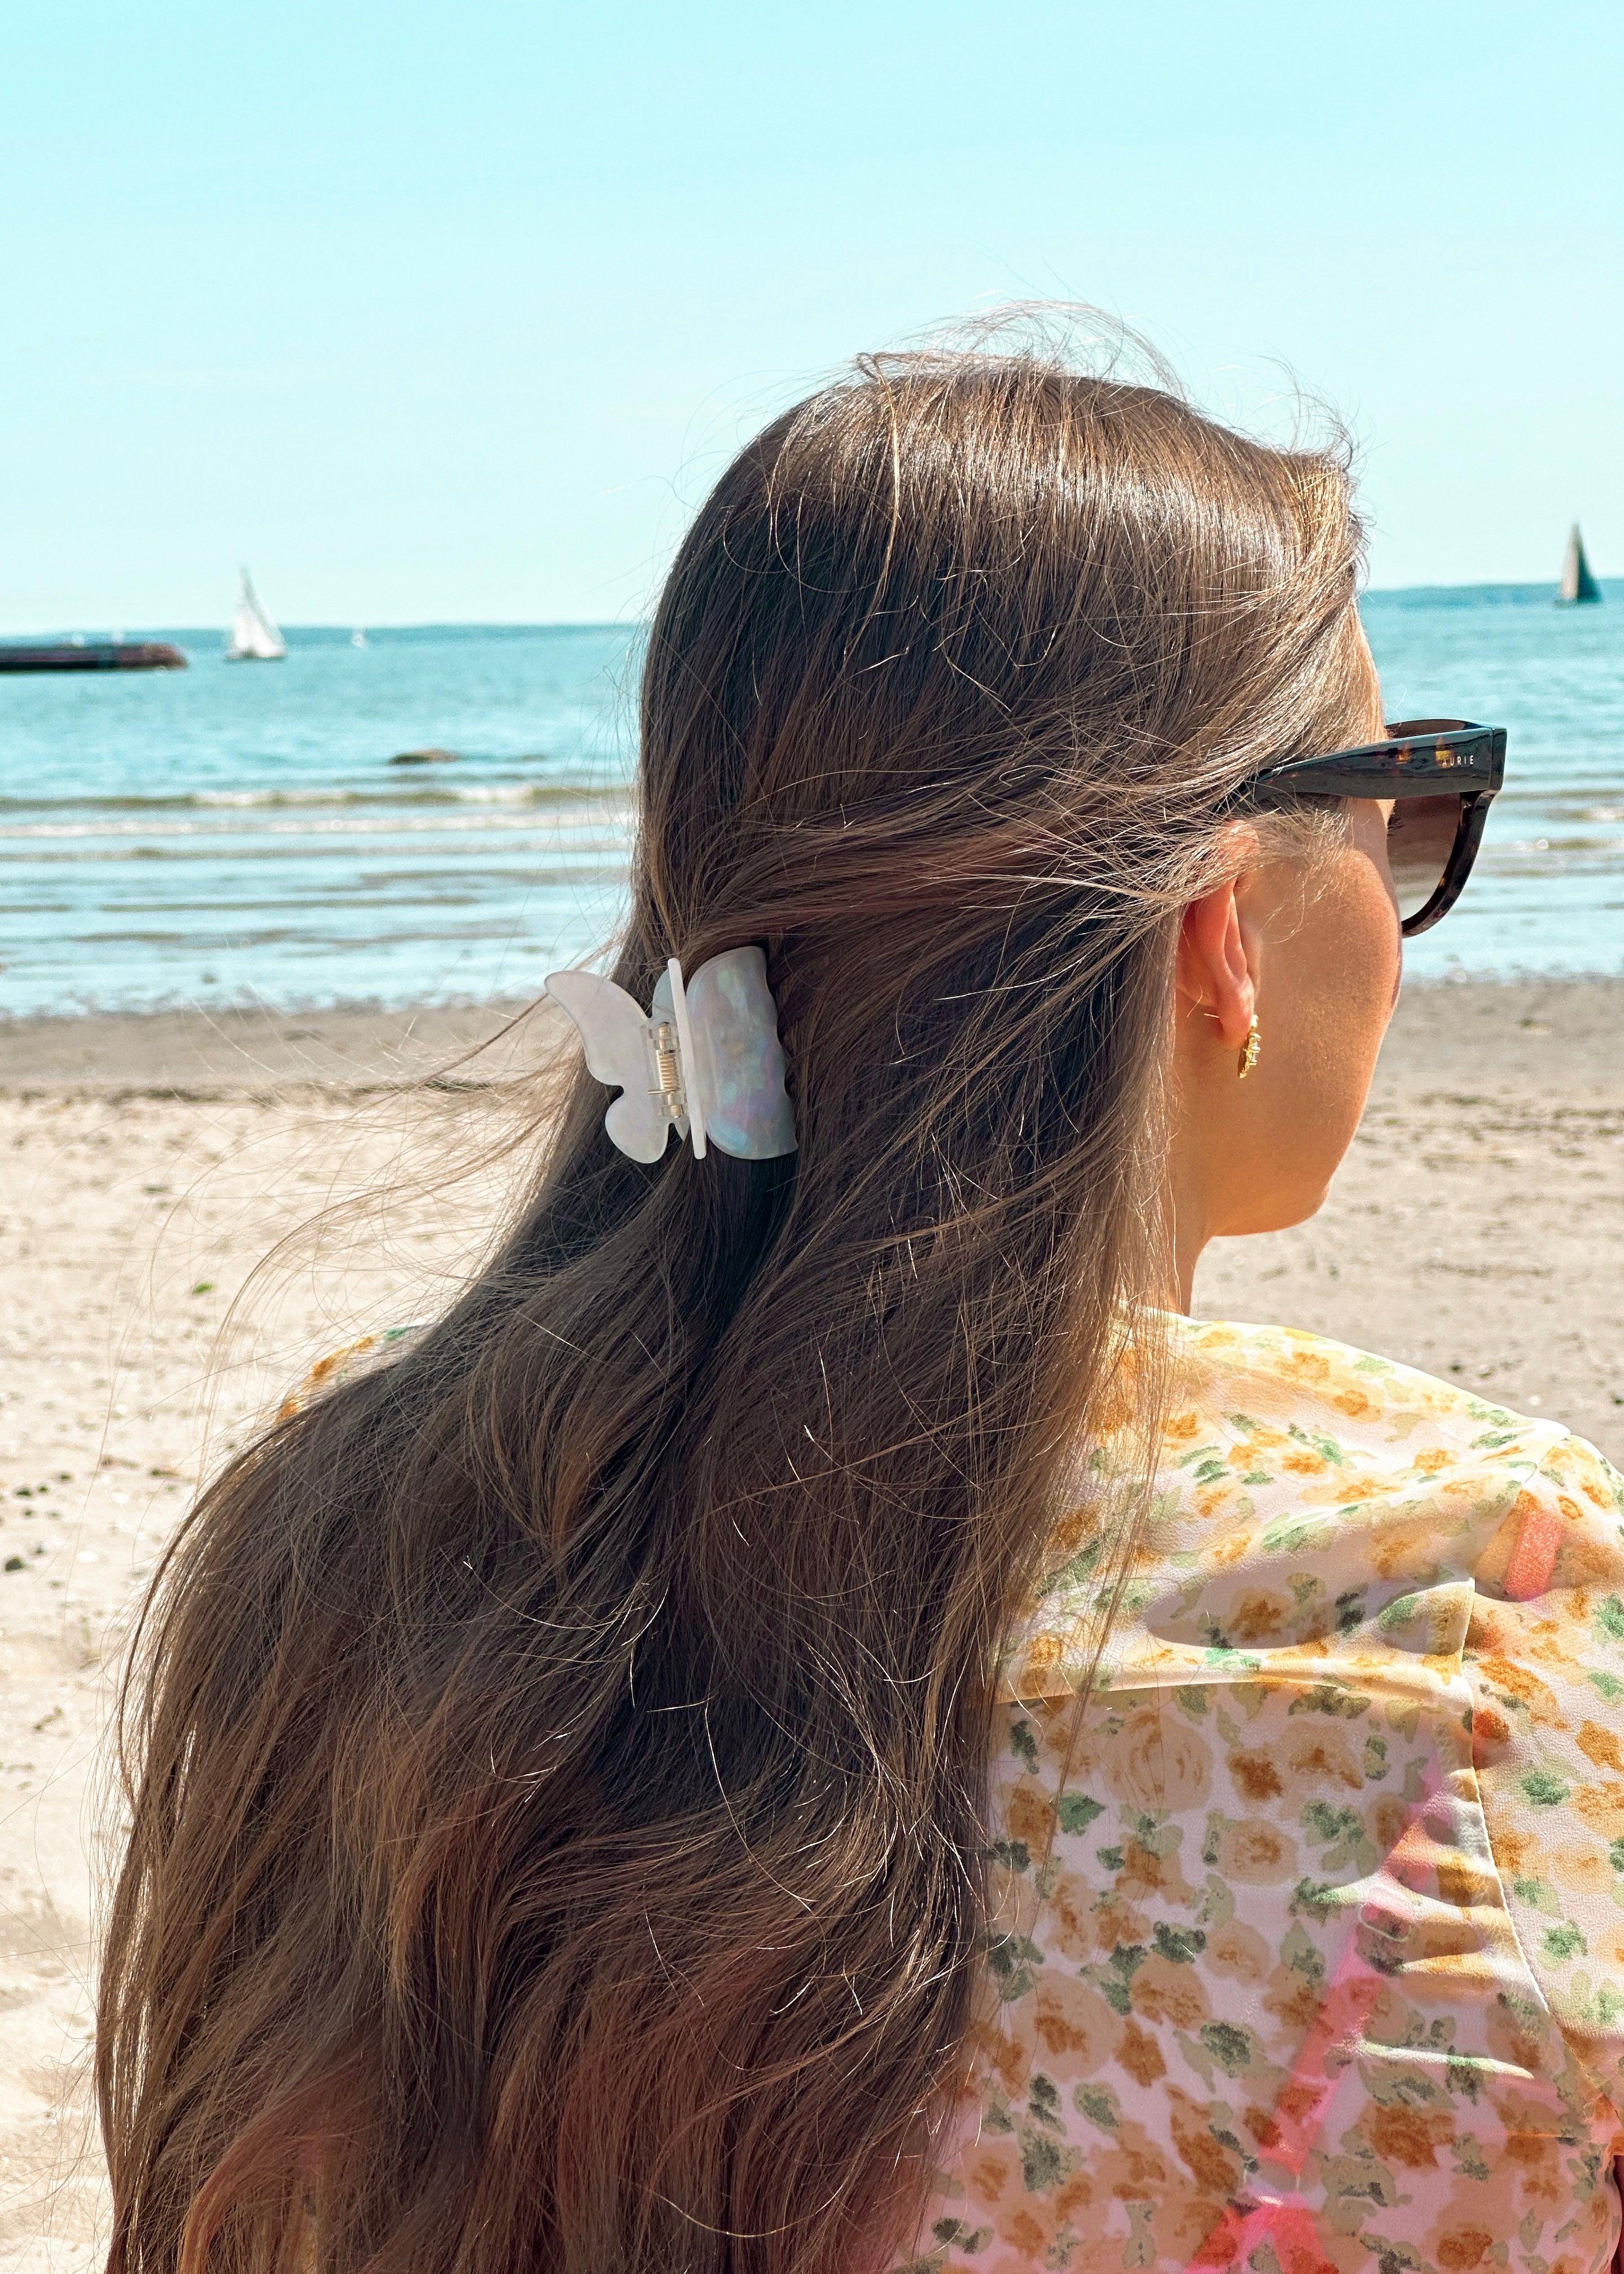 En kvinne på stranden nyter solen iført en solfylt, gul sommerkjole. Hun har langt brunt hår og bruker solbriller for å beskytte øynene sine. Håret er pyntet med en hvit sommerfuglhårklype, som gir et delikat og sommerlig preg.